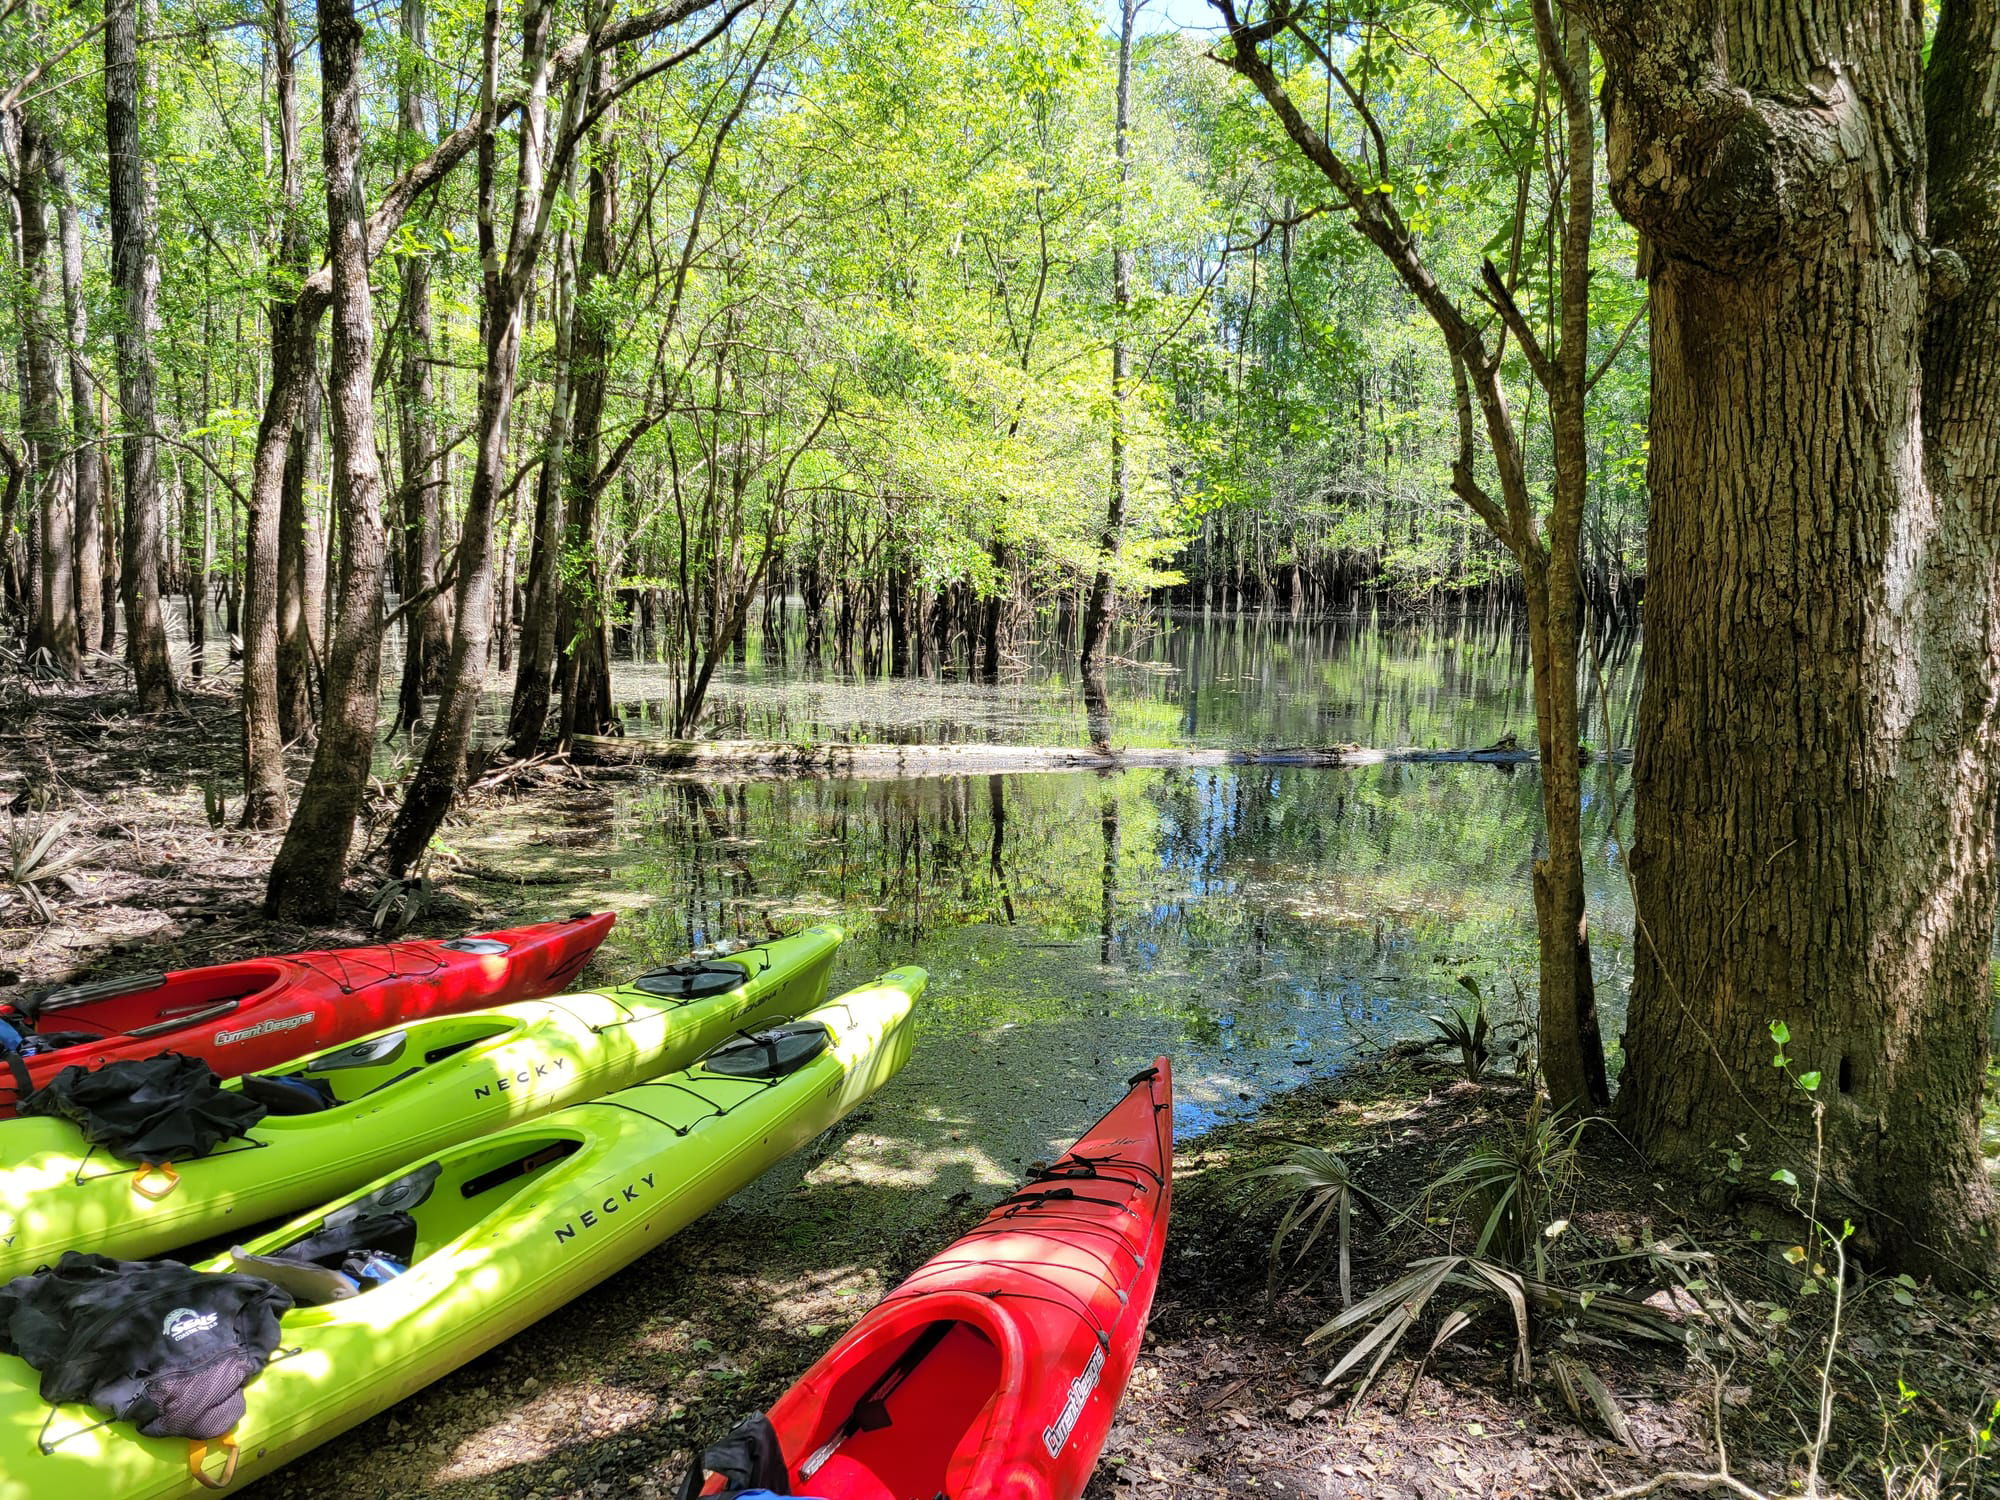 REI Trip: Coastal Carolina Sea Kayaking: Pitch Landing - Francis Marion National Forest - 4/25/21